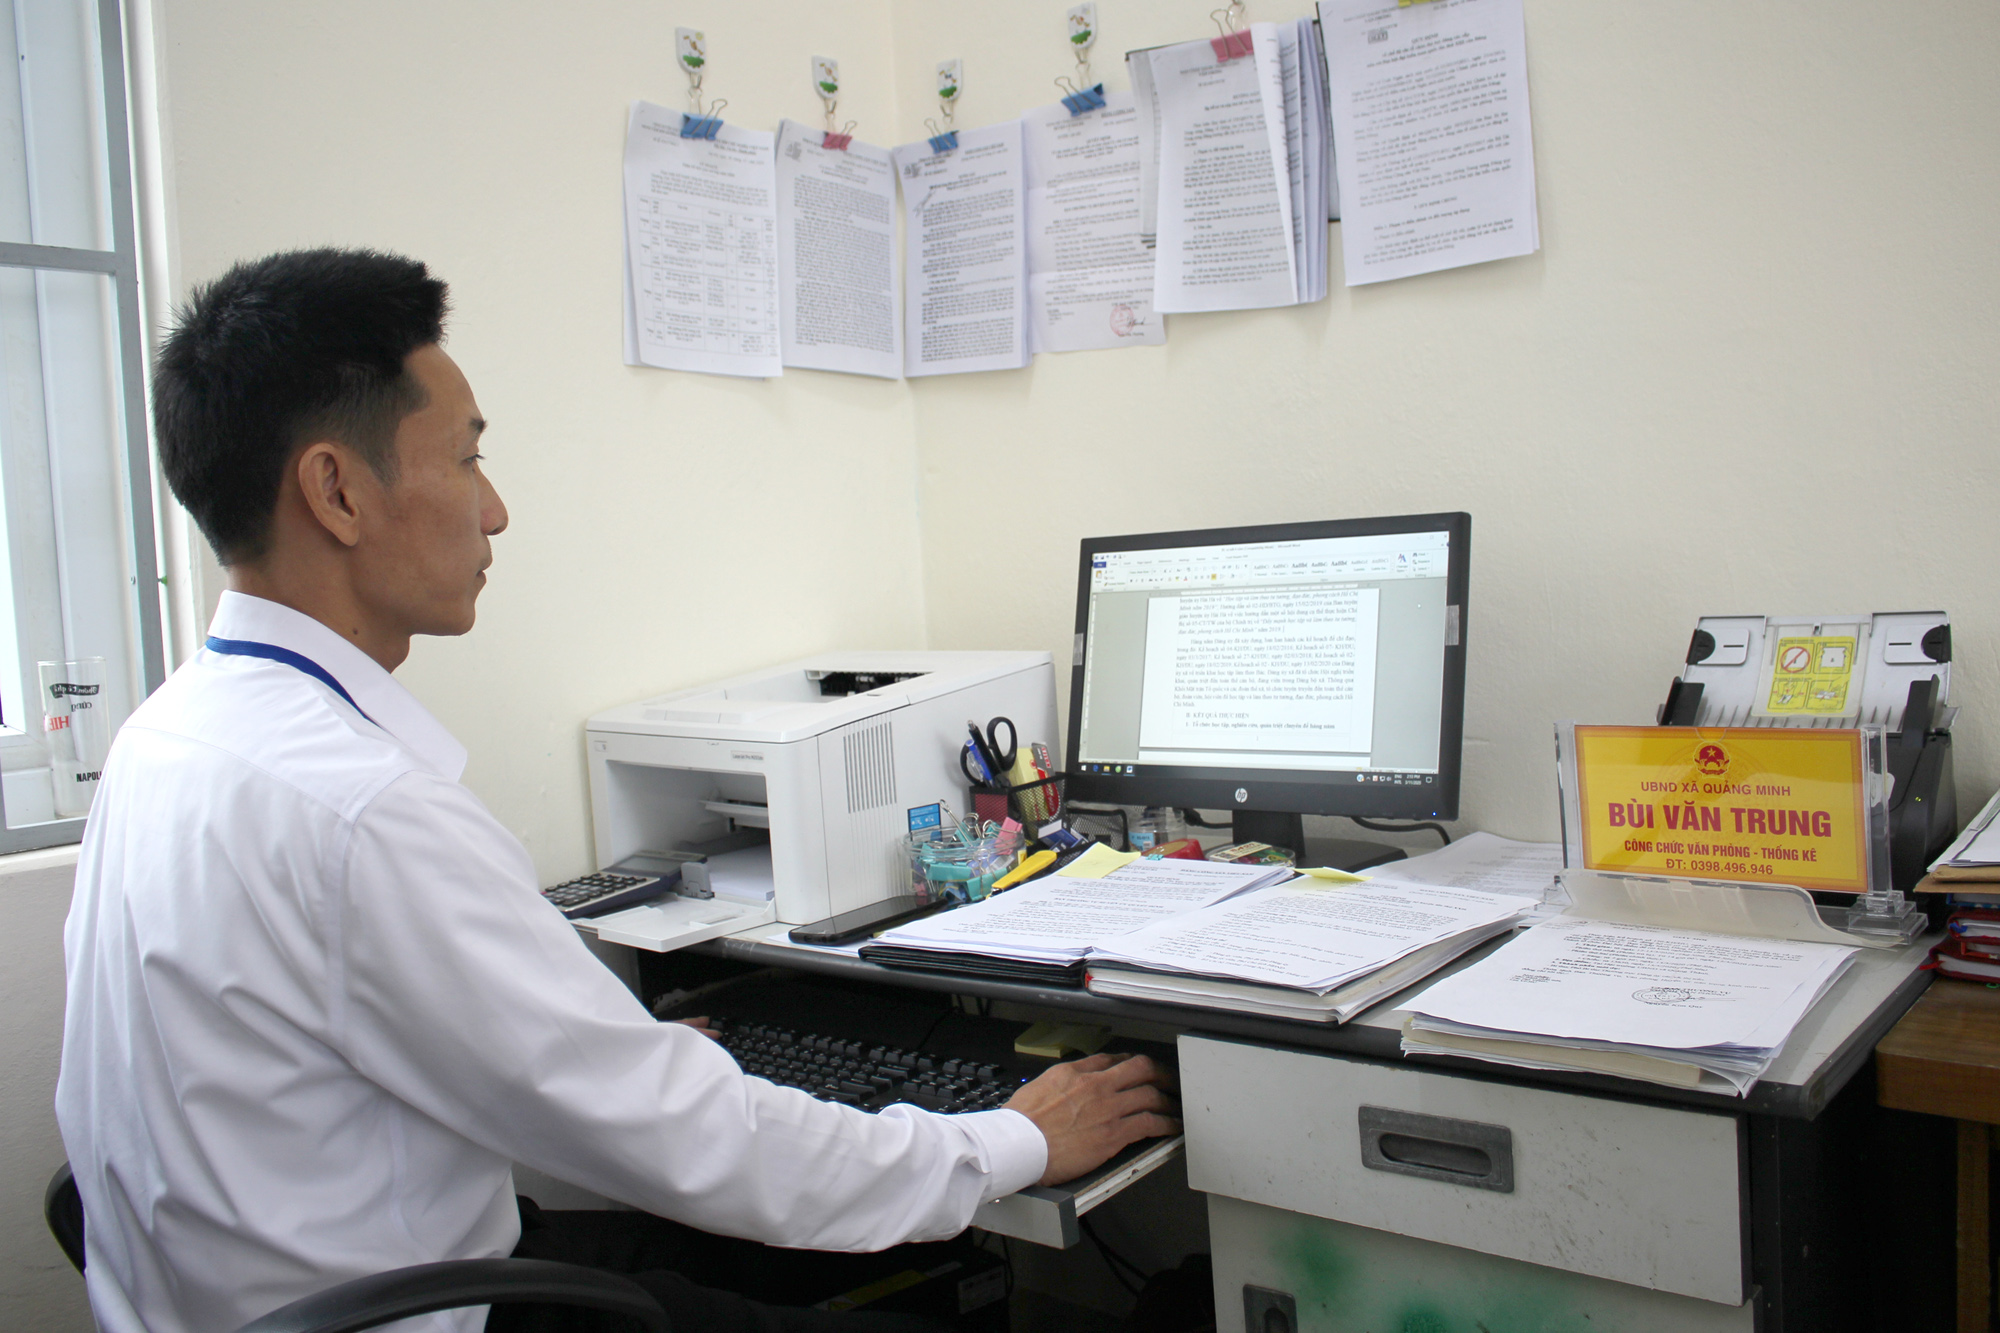 Anh Bùi Văn Trung, công chức văn phòng xã Quảng Minh (Hải Hà) đã kịp thời nắm bắt được tiến độ công việc sau sáp nhập